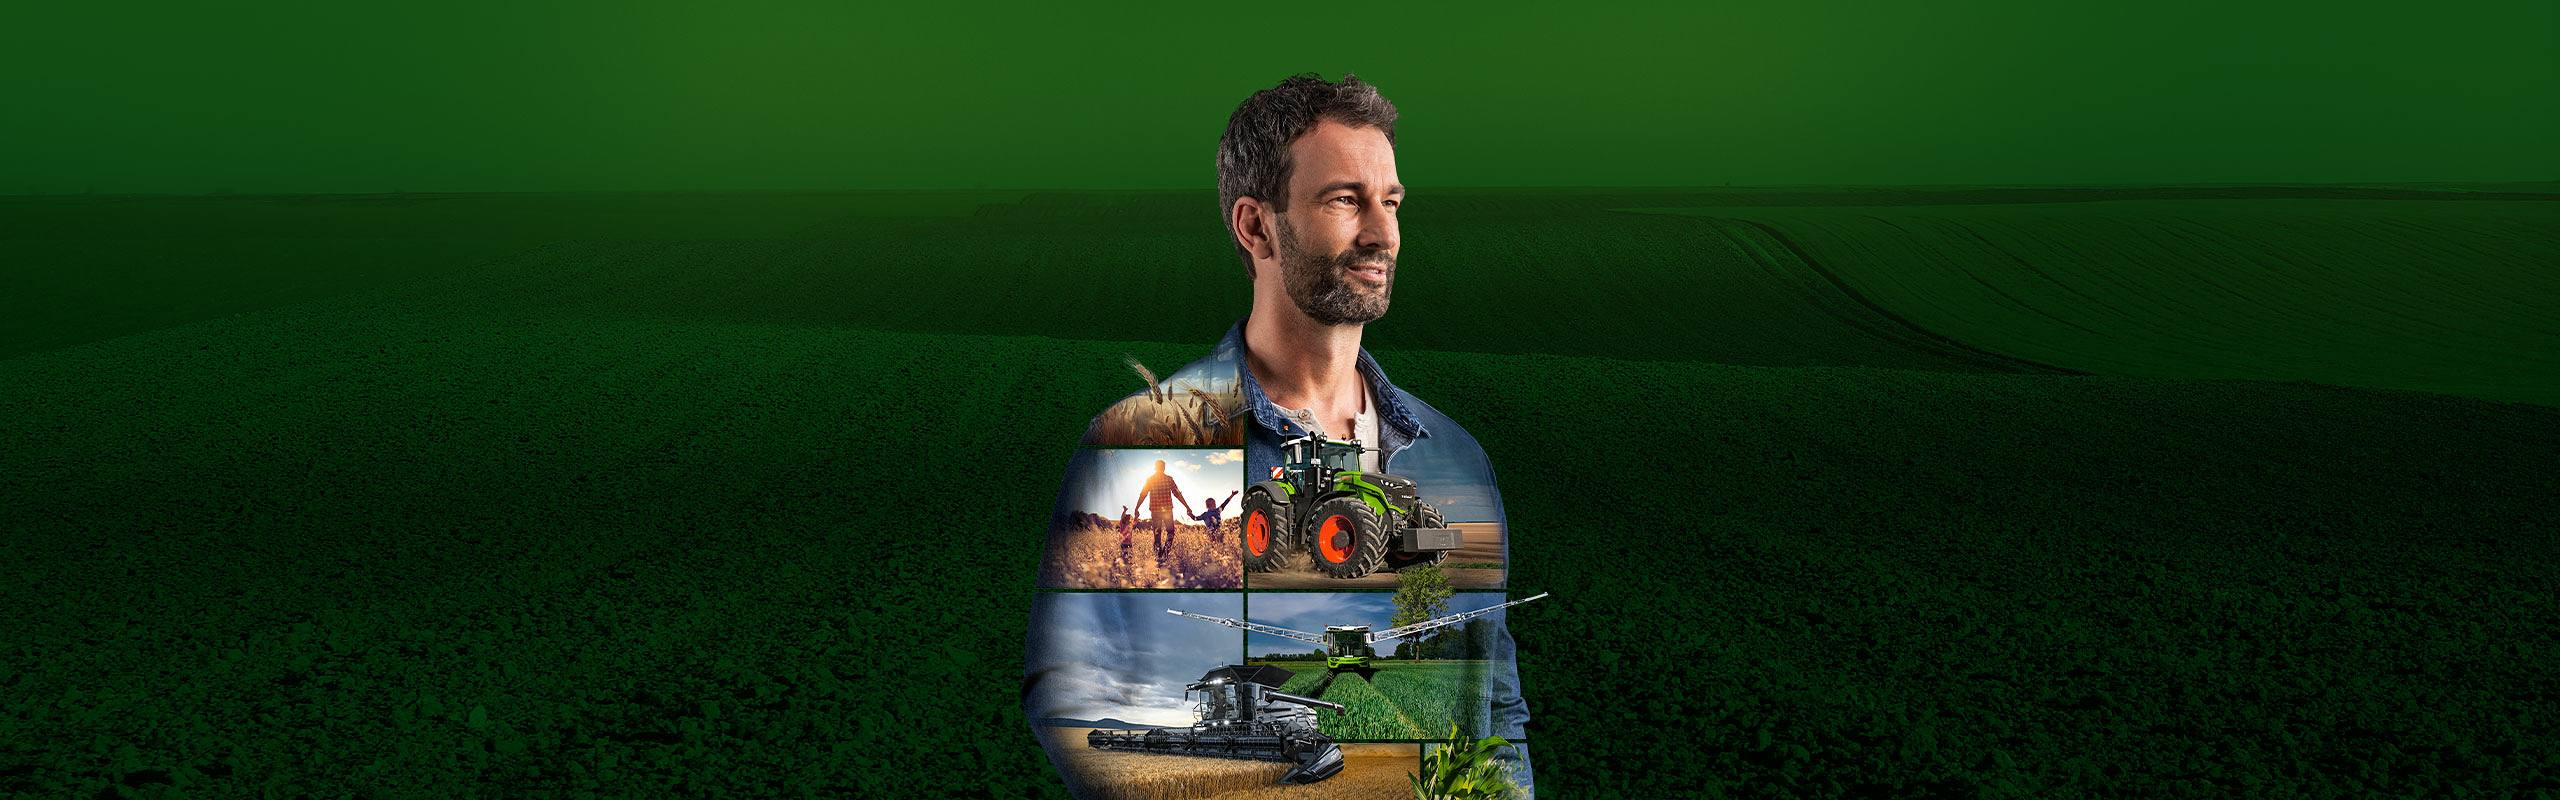 Egy gazda áll a zöld háttér előtt, és motiváltan tekint a jövőbe. Fendt termékeket ábrázolnak a tetején.